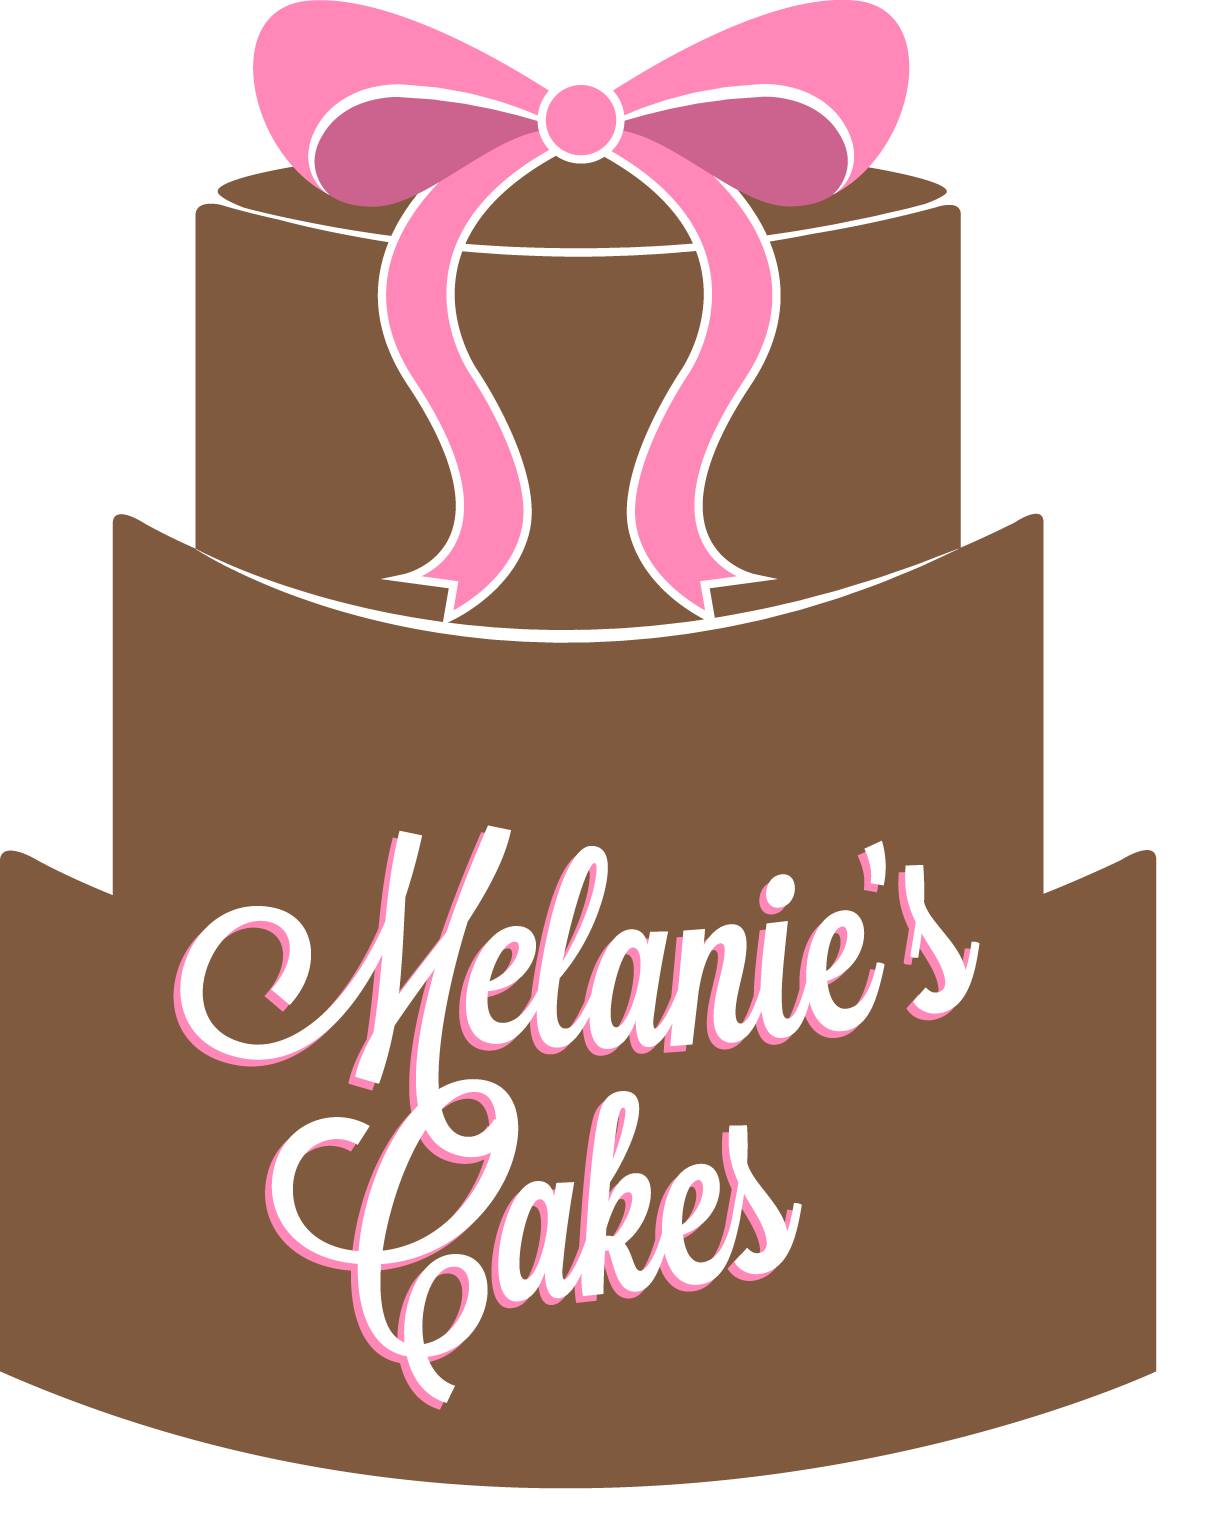 Melanies cakes